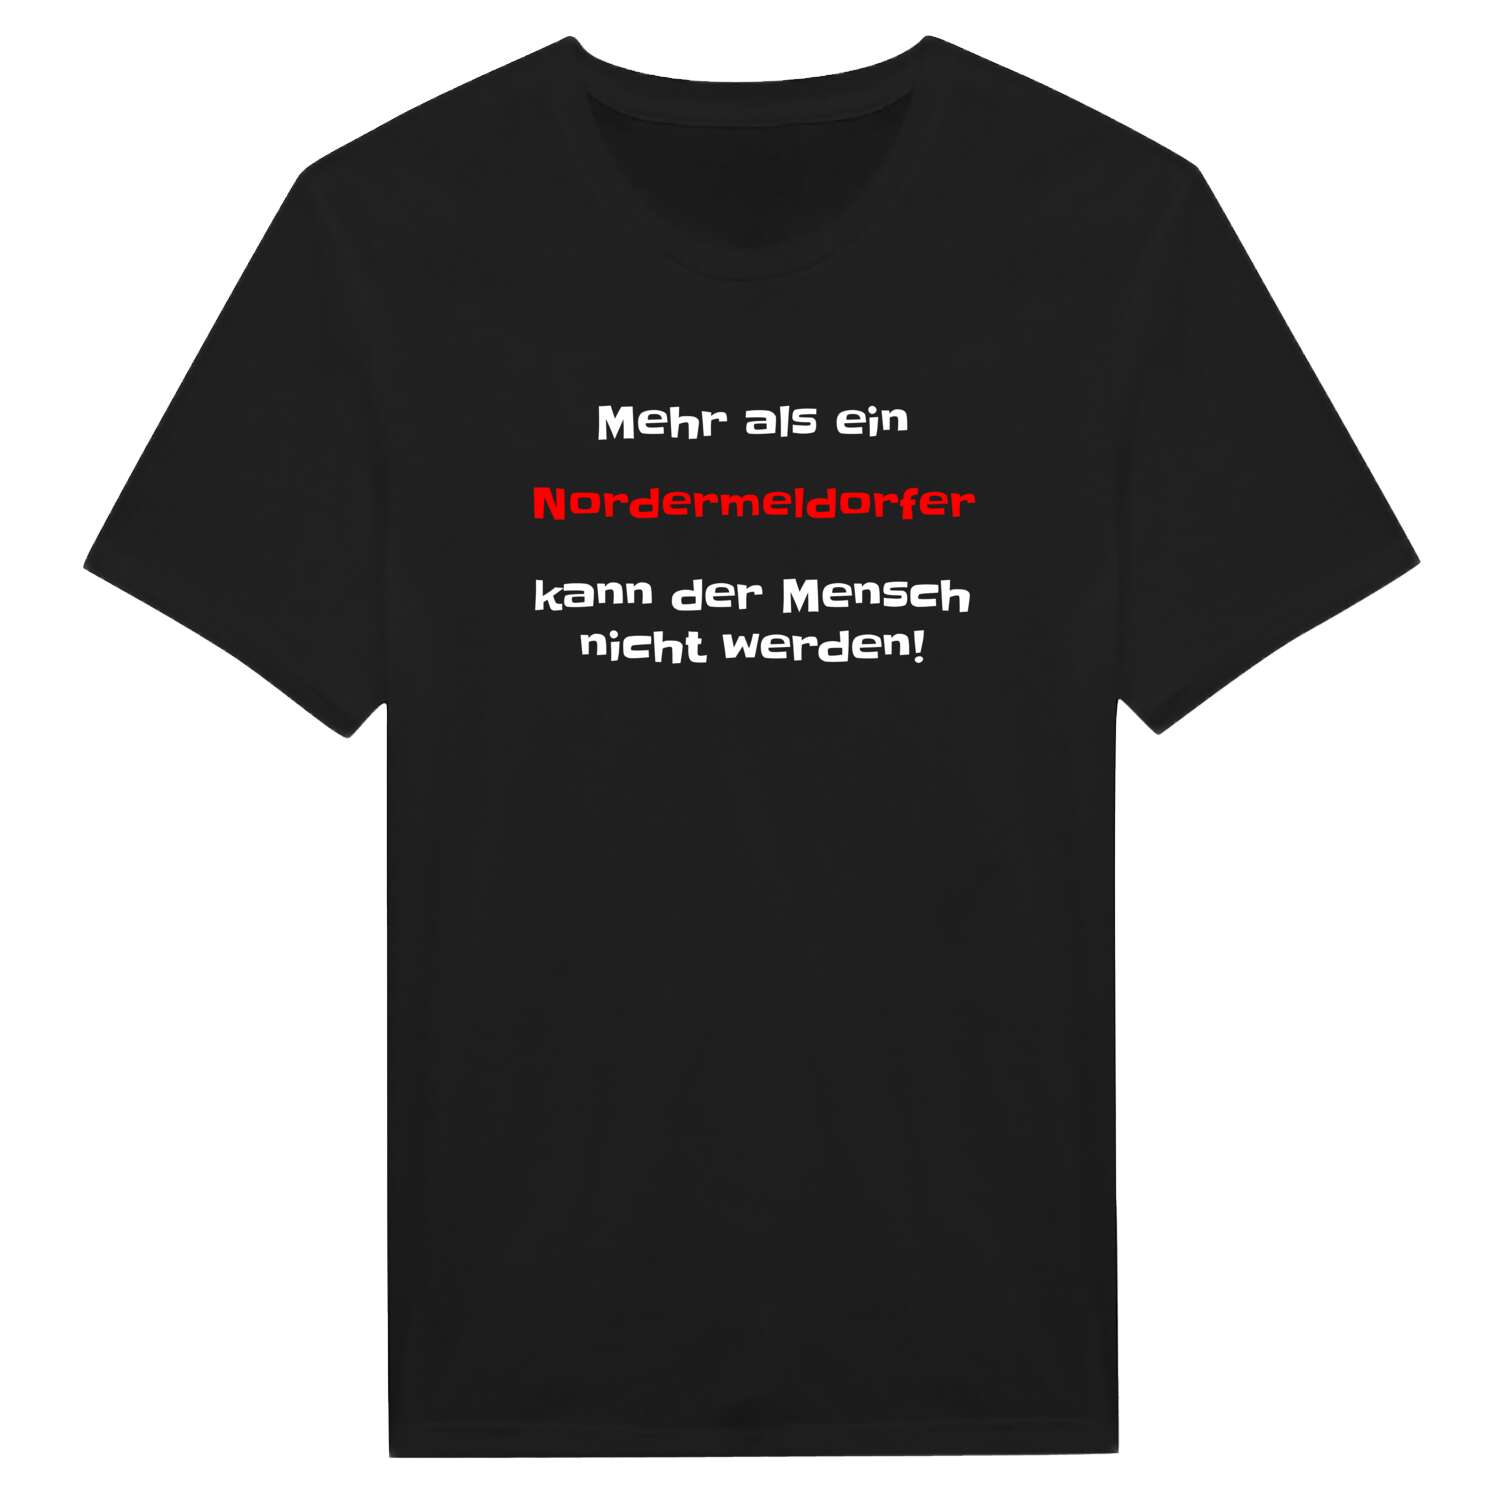 Nordermeldorf T-Shirt »Mehr als ein«